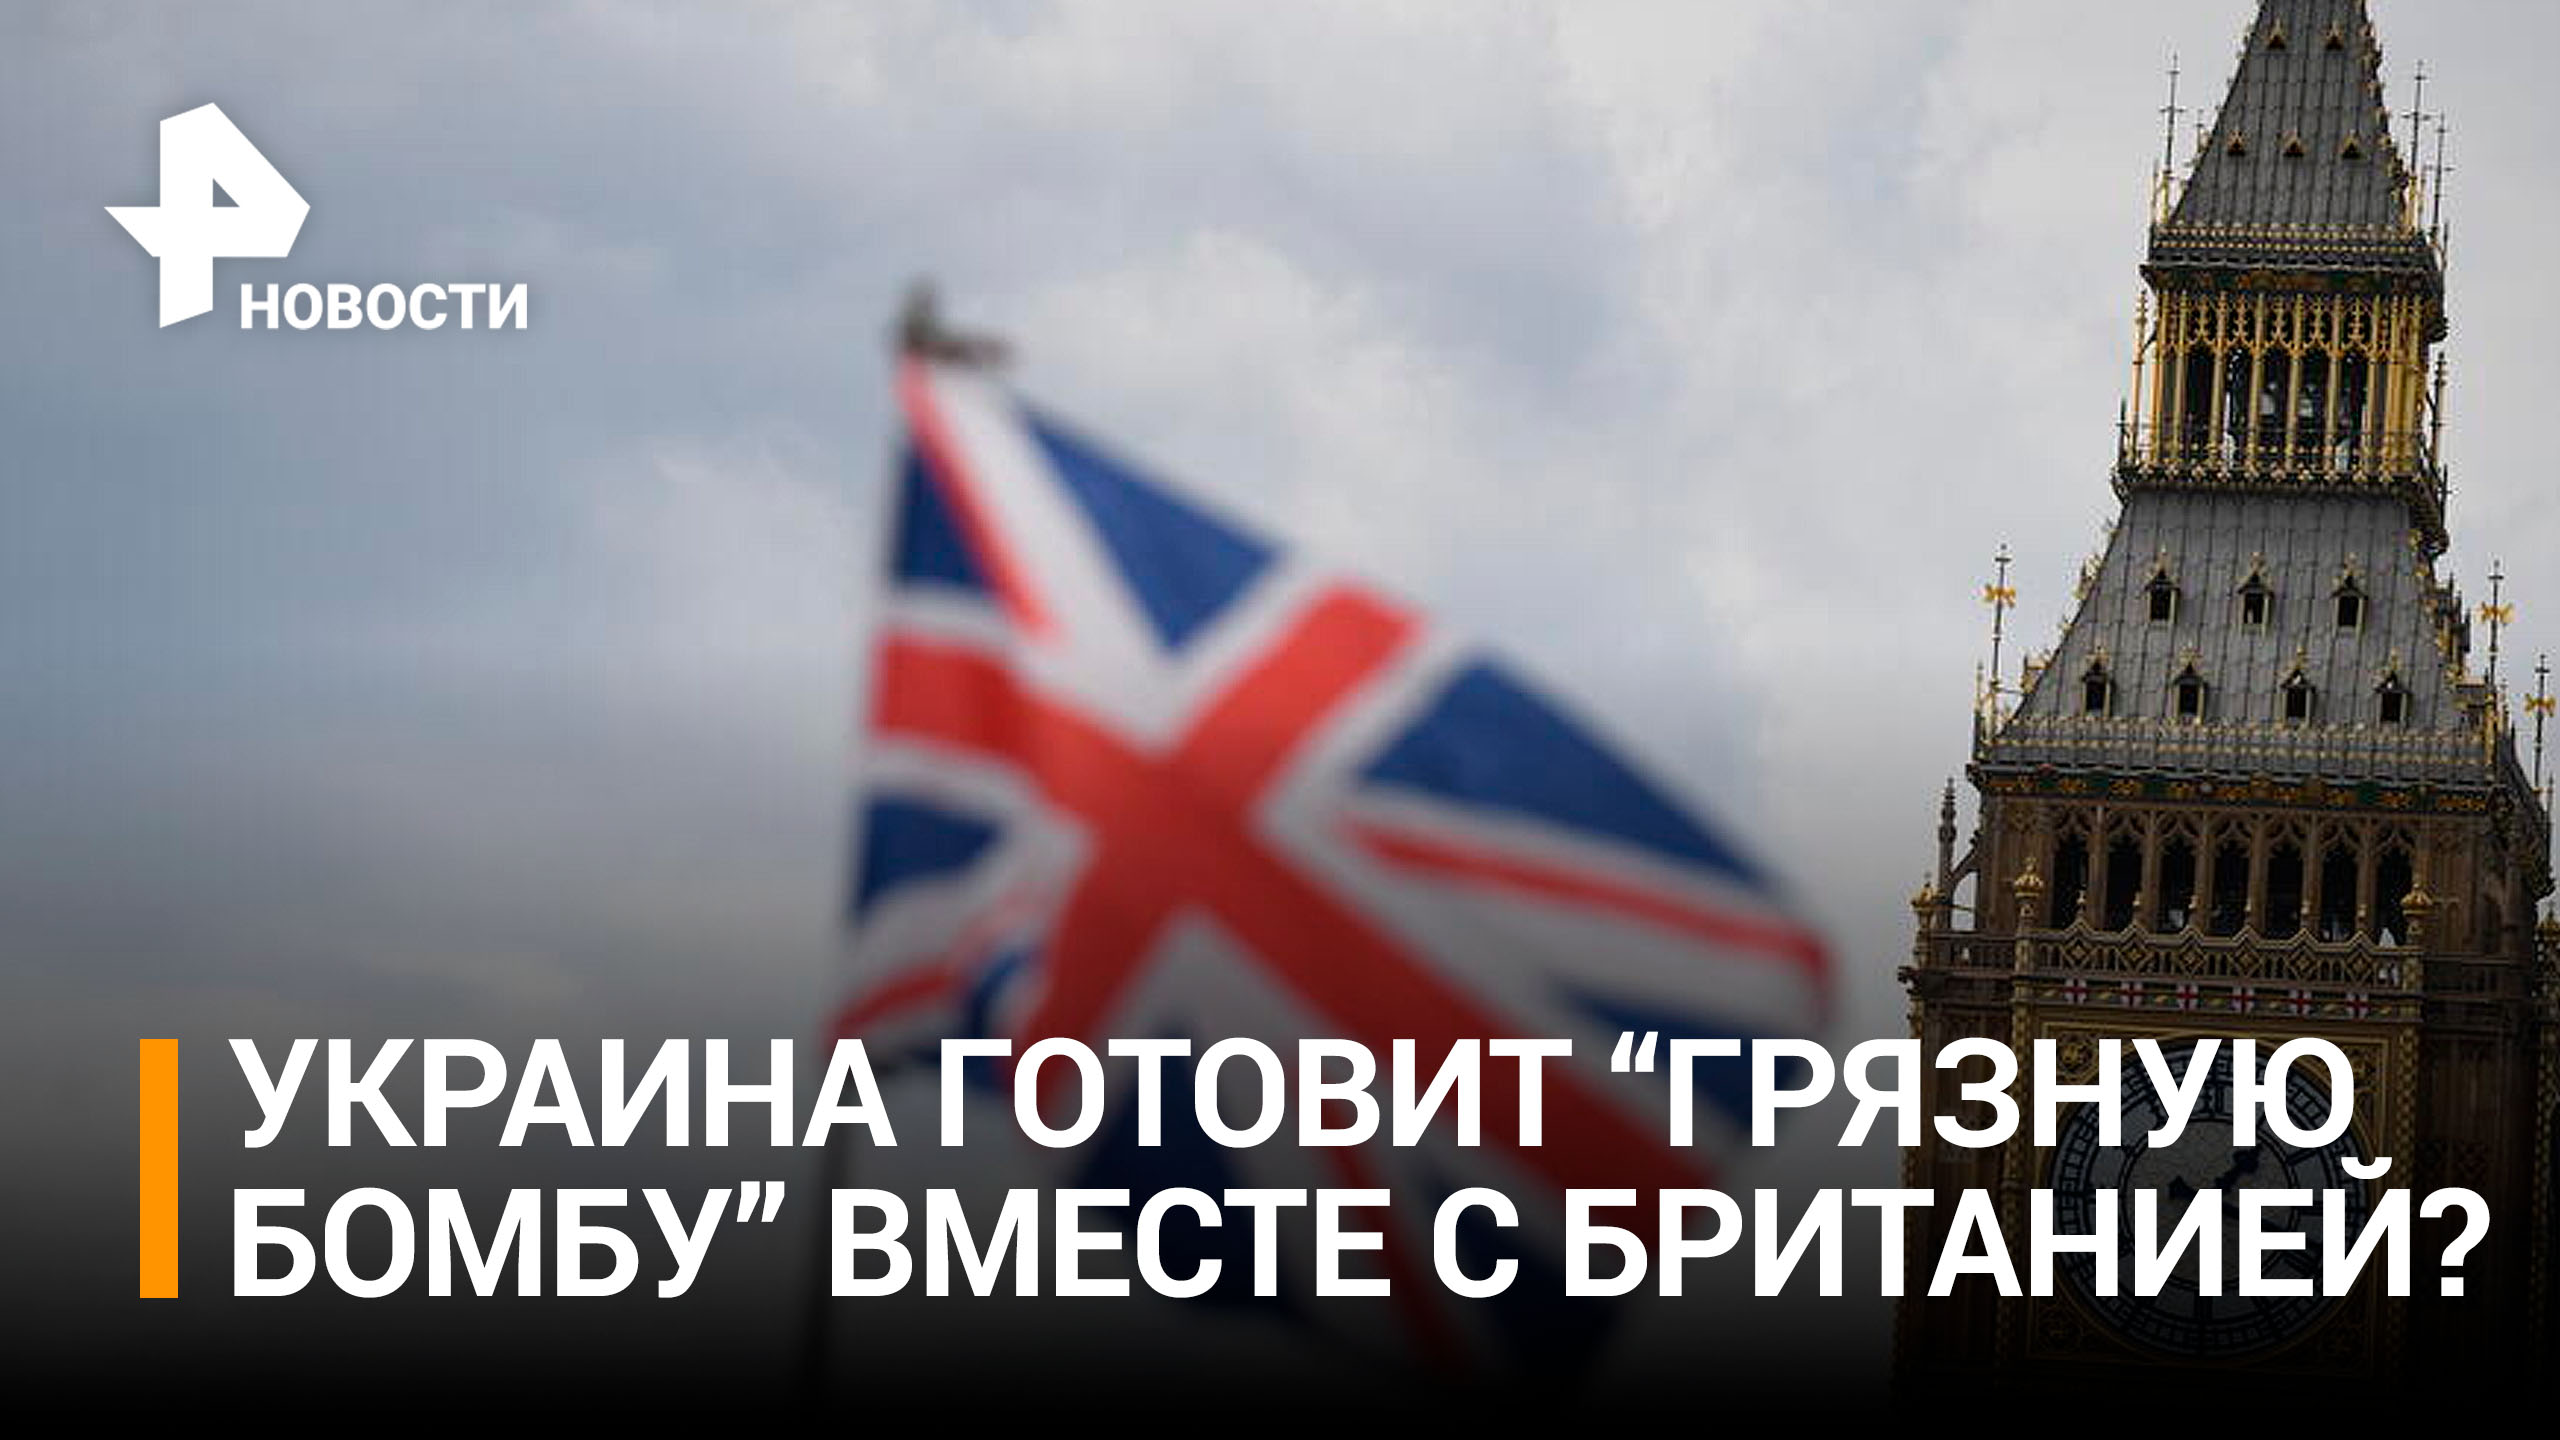 Великобритания участвует в разработке "Грязной бомбы" Украины? / РЕН Новости